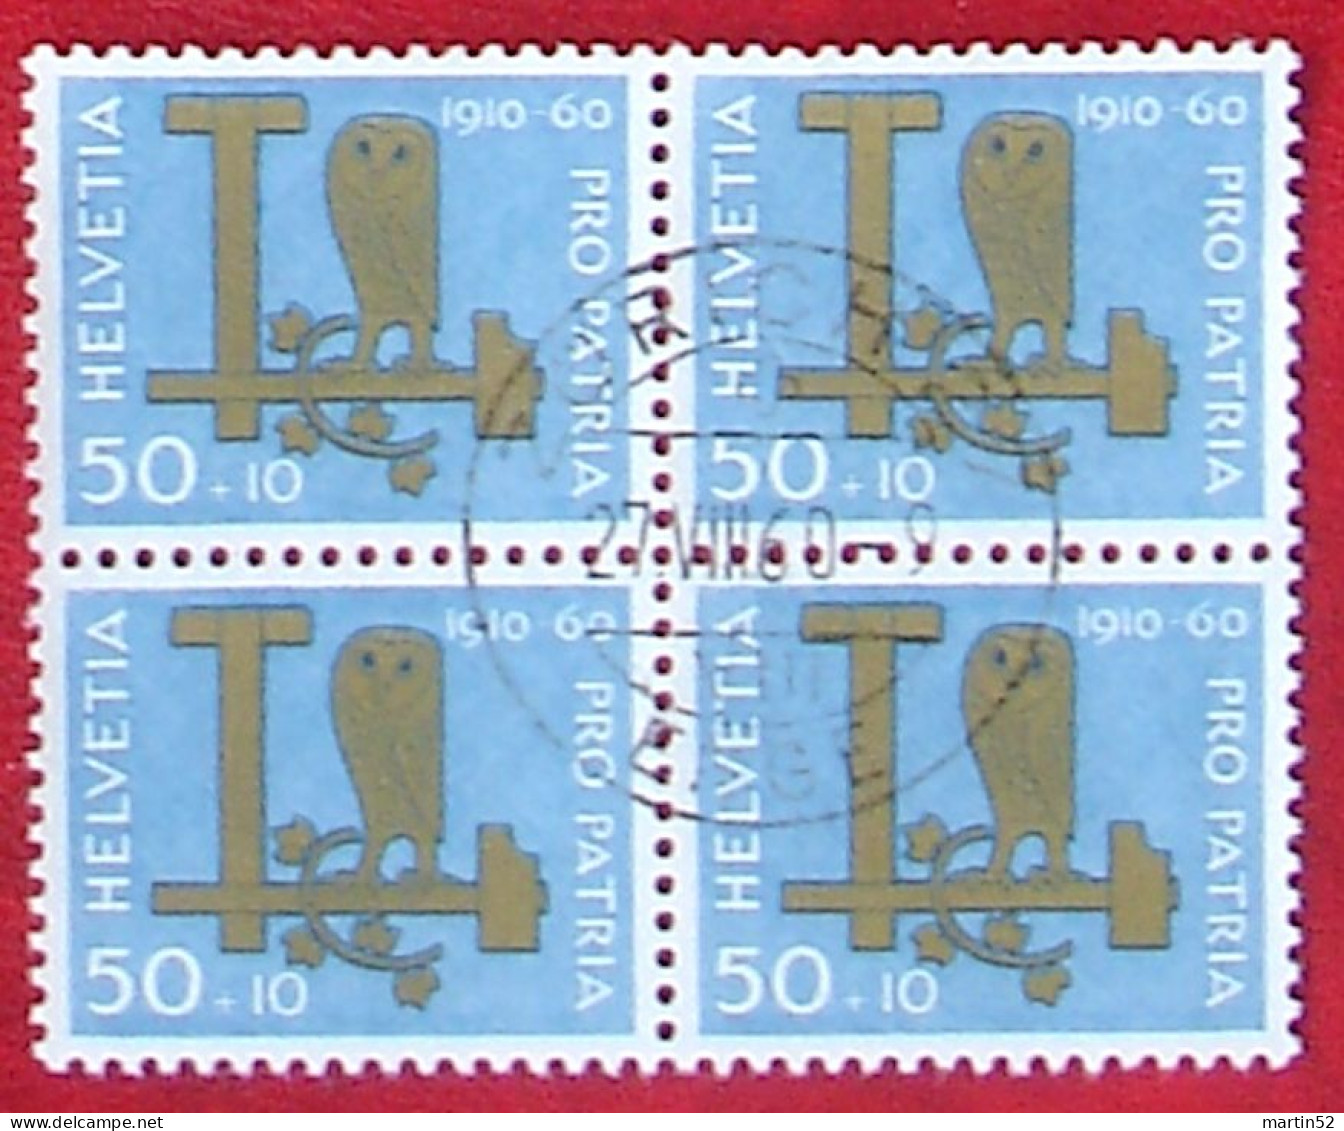 Schweiz Suisse Pro Patria 1960: Eule Hibou Owl Zu WII 100 Mi 718 Yv 665 Block Mit O ZÜRICH 27.VIII.60 (Zu CHF 32.00) - Uilen